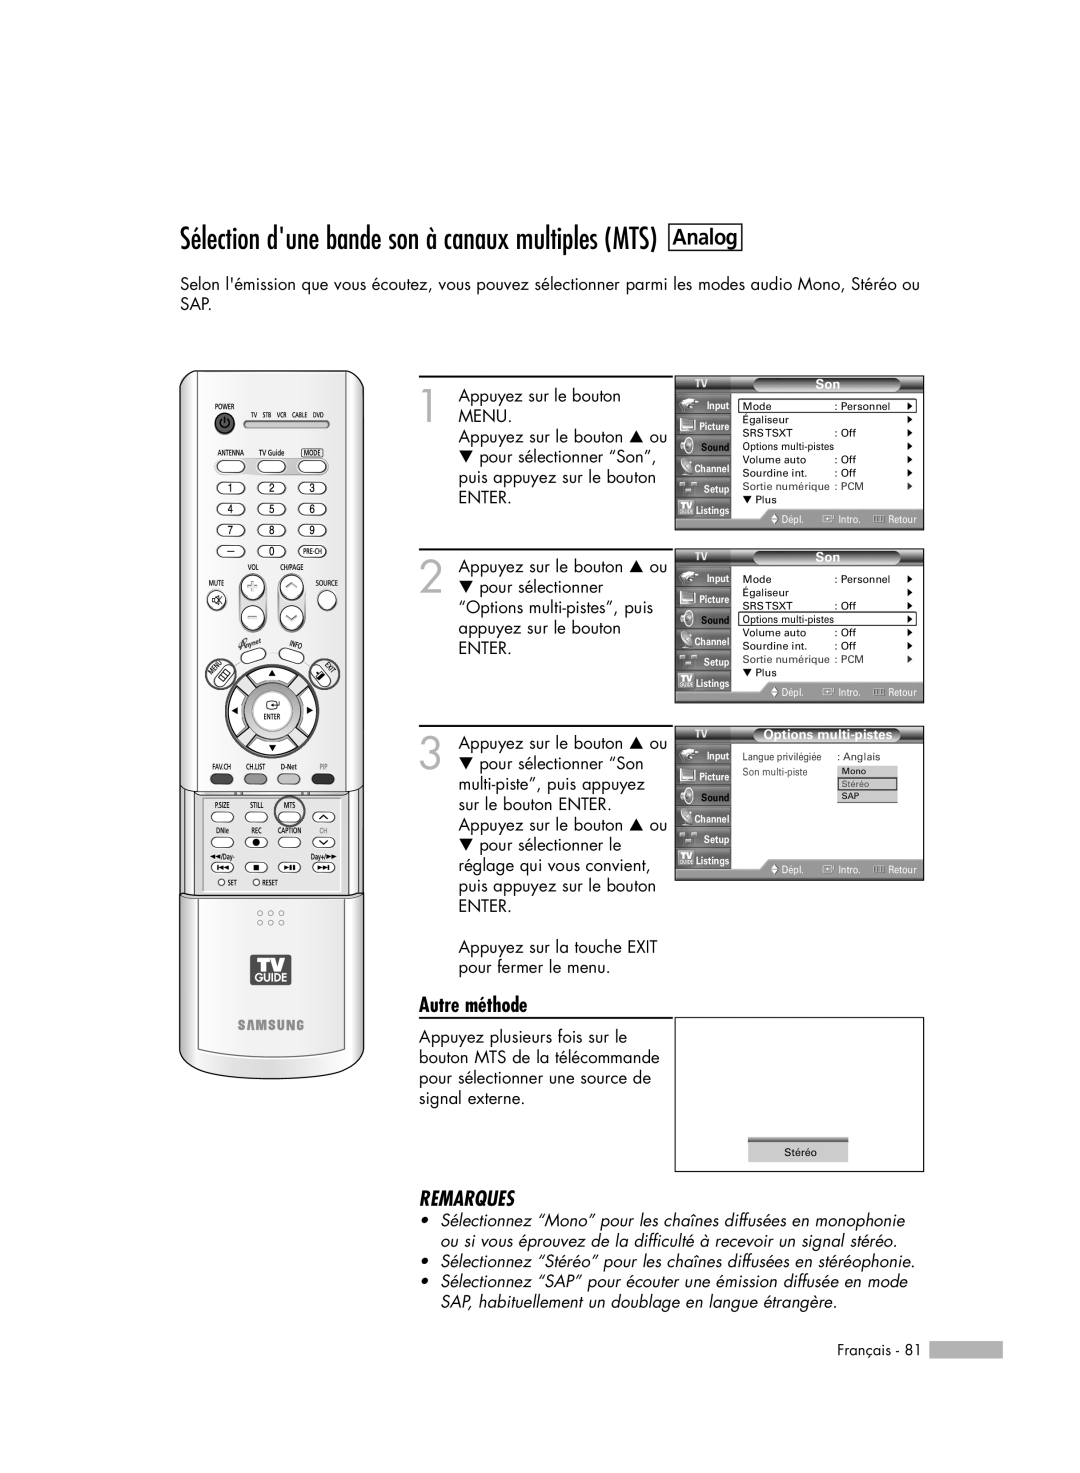 Samsung HL-R5078W Analog, Sélection dune bande son à canaux multiples MTS, Autre méthode, Remarques, Français, Dépl, Intro 